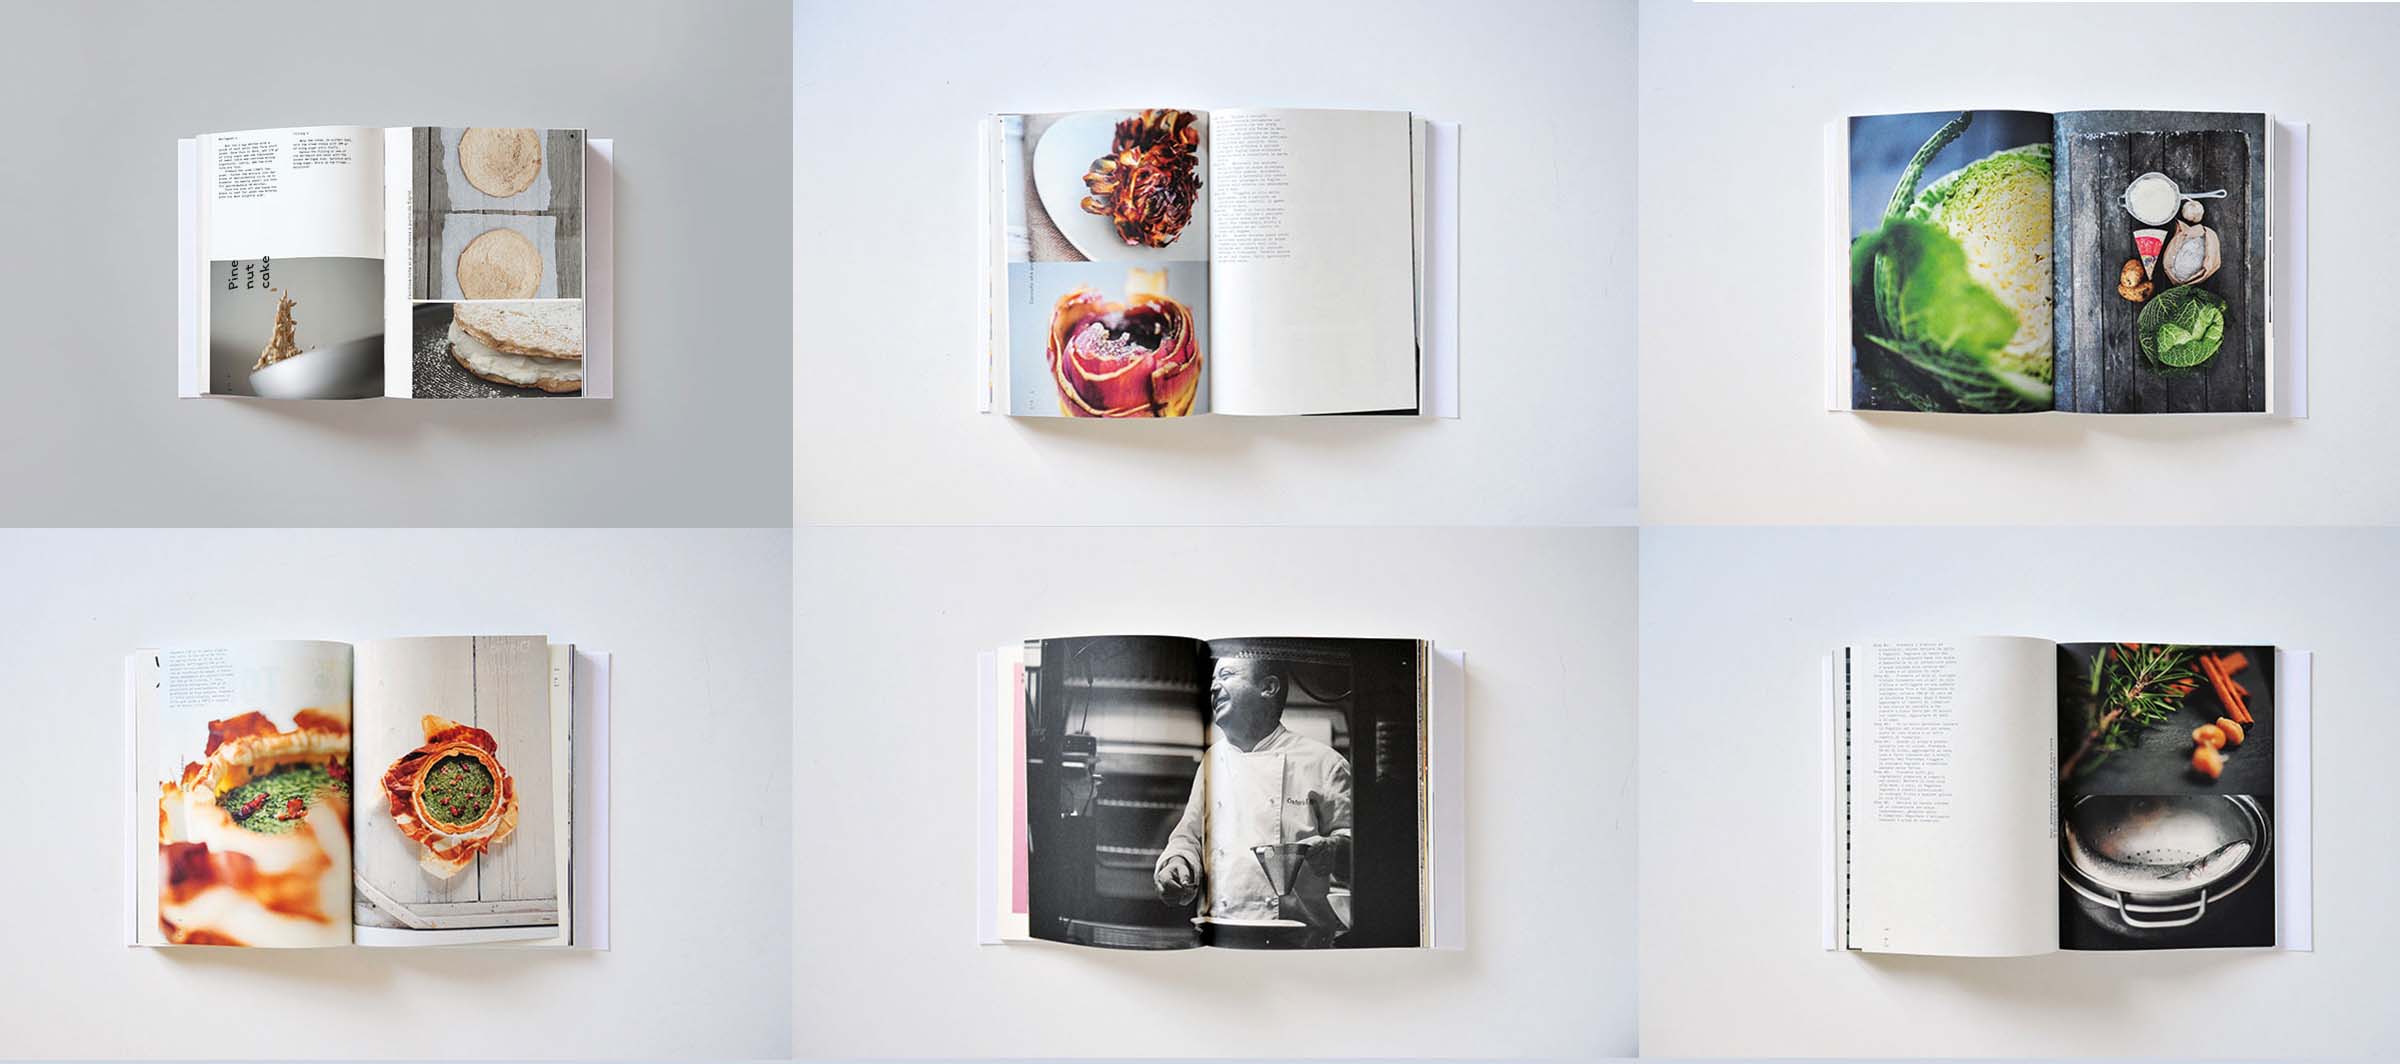 Spollo Kitchen book project, recensione, Biagi